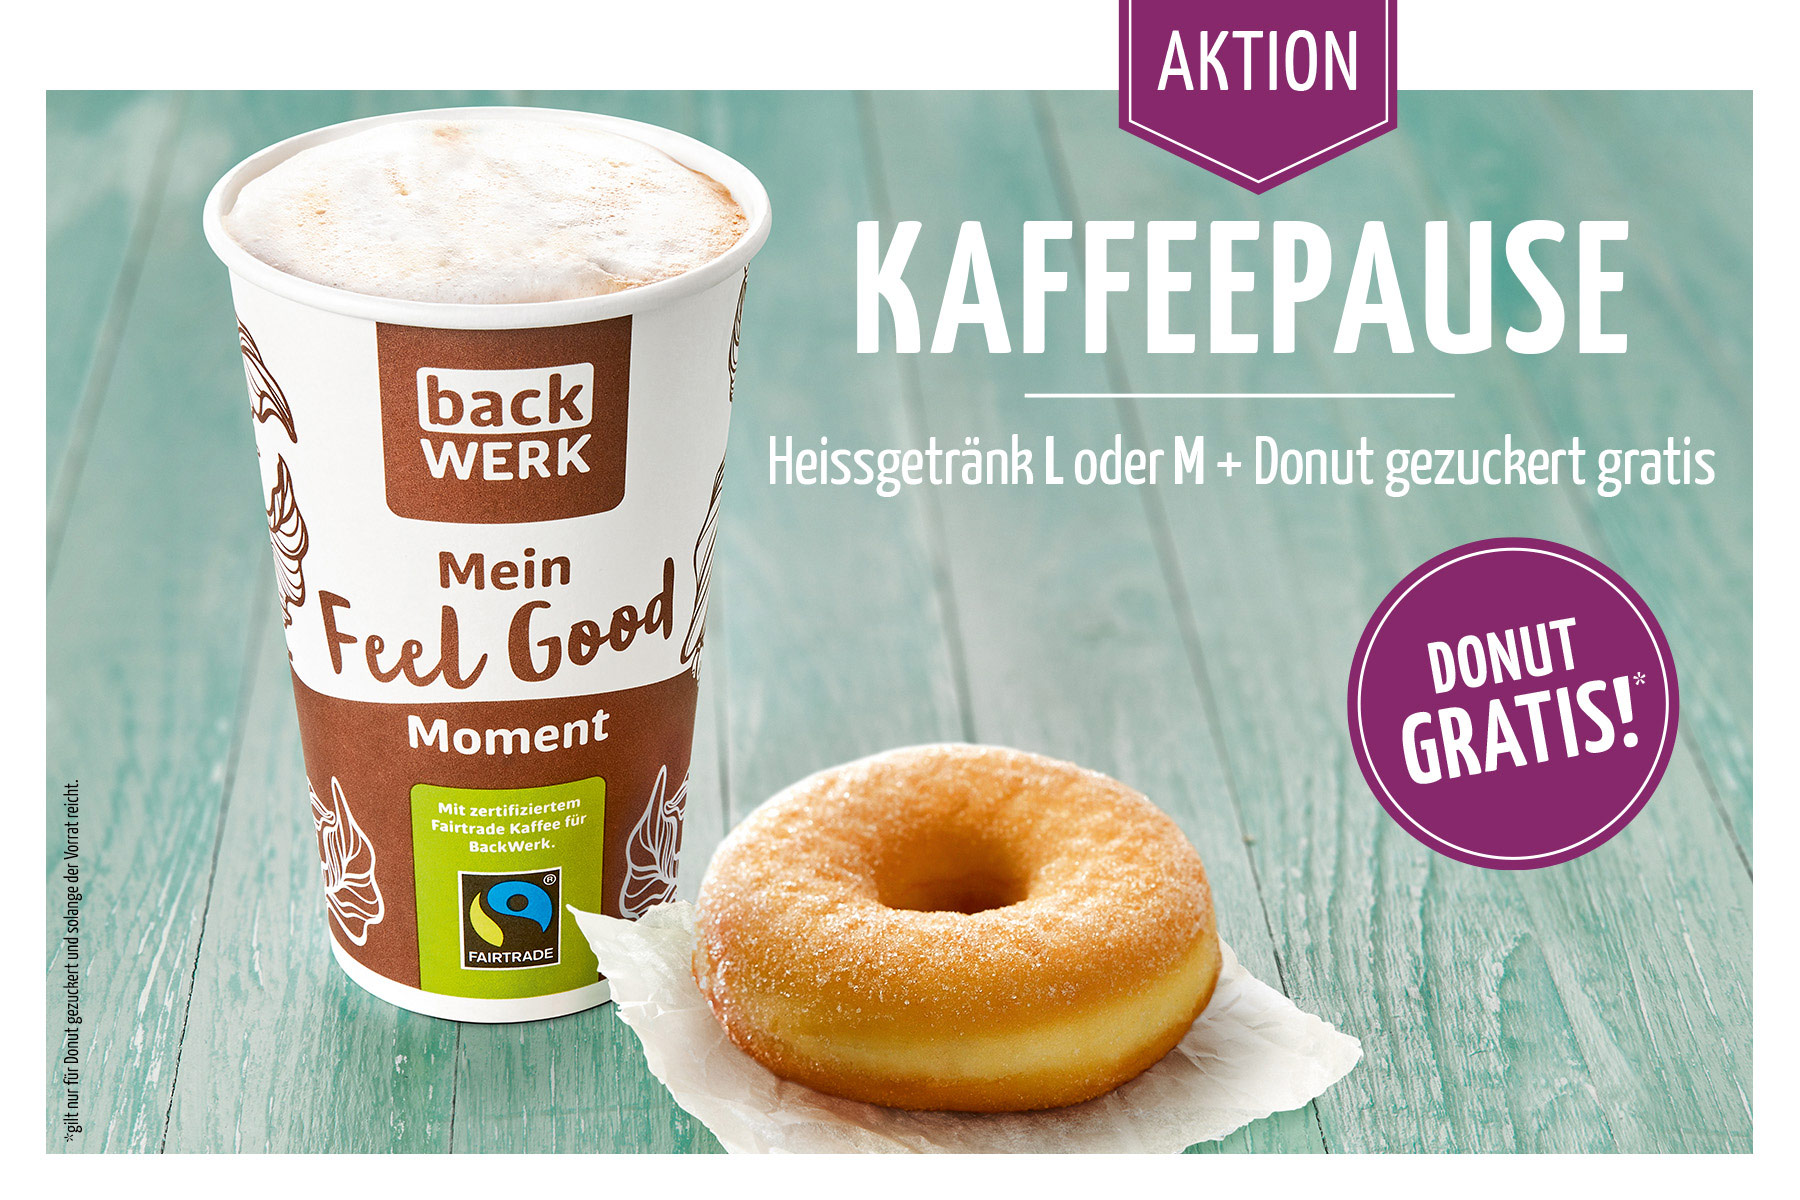 Kaffeepause: Heißgetränk L oder M und Donut gezuckert gratis